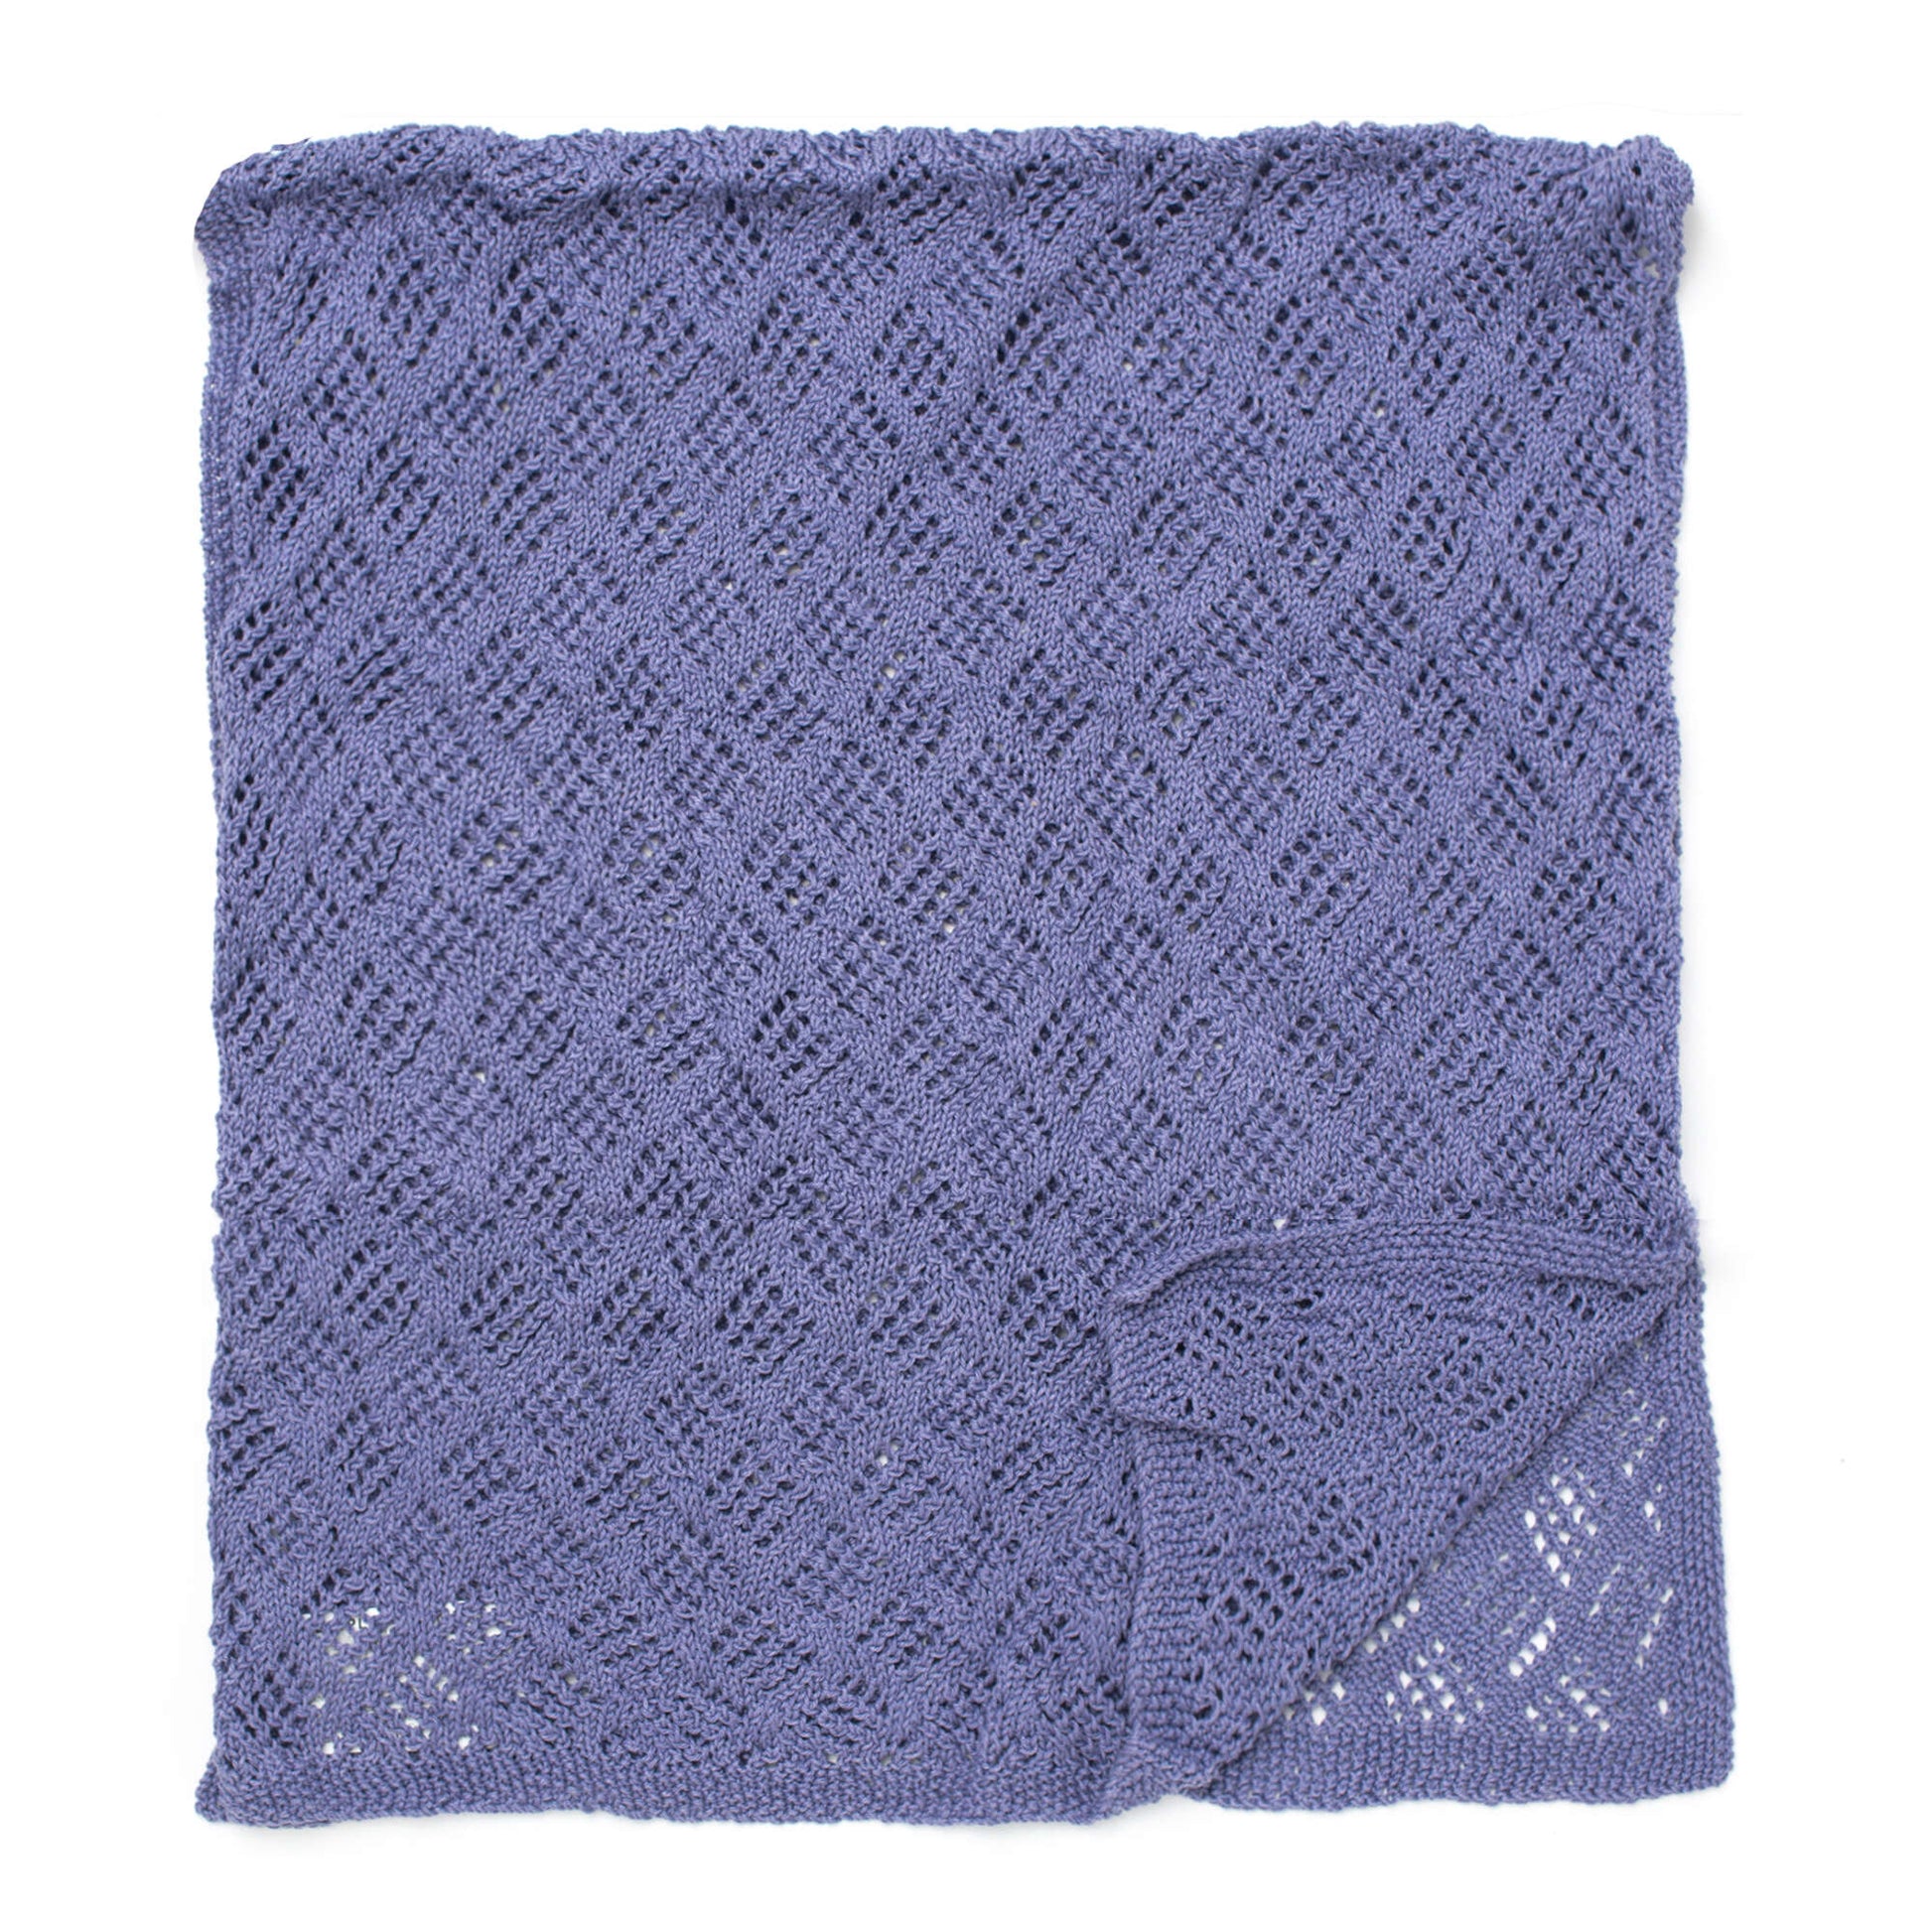 Free Patons Diamond Lace Wrap Knit Pattern